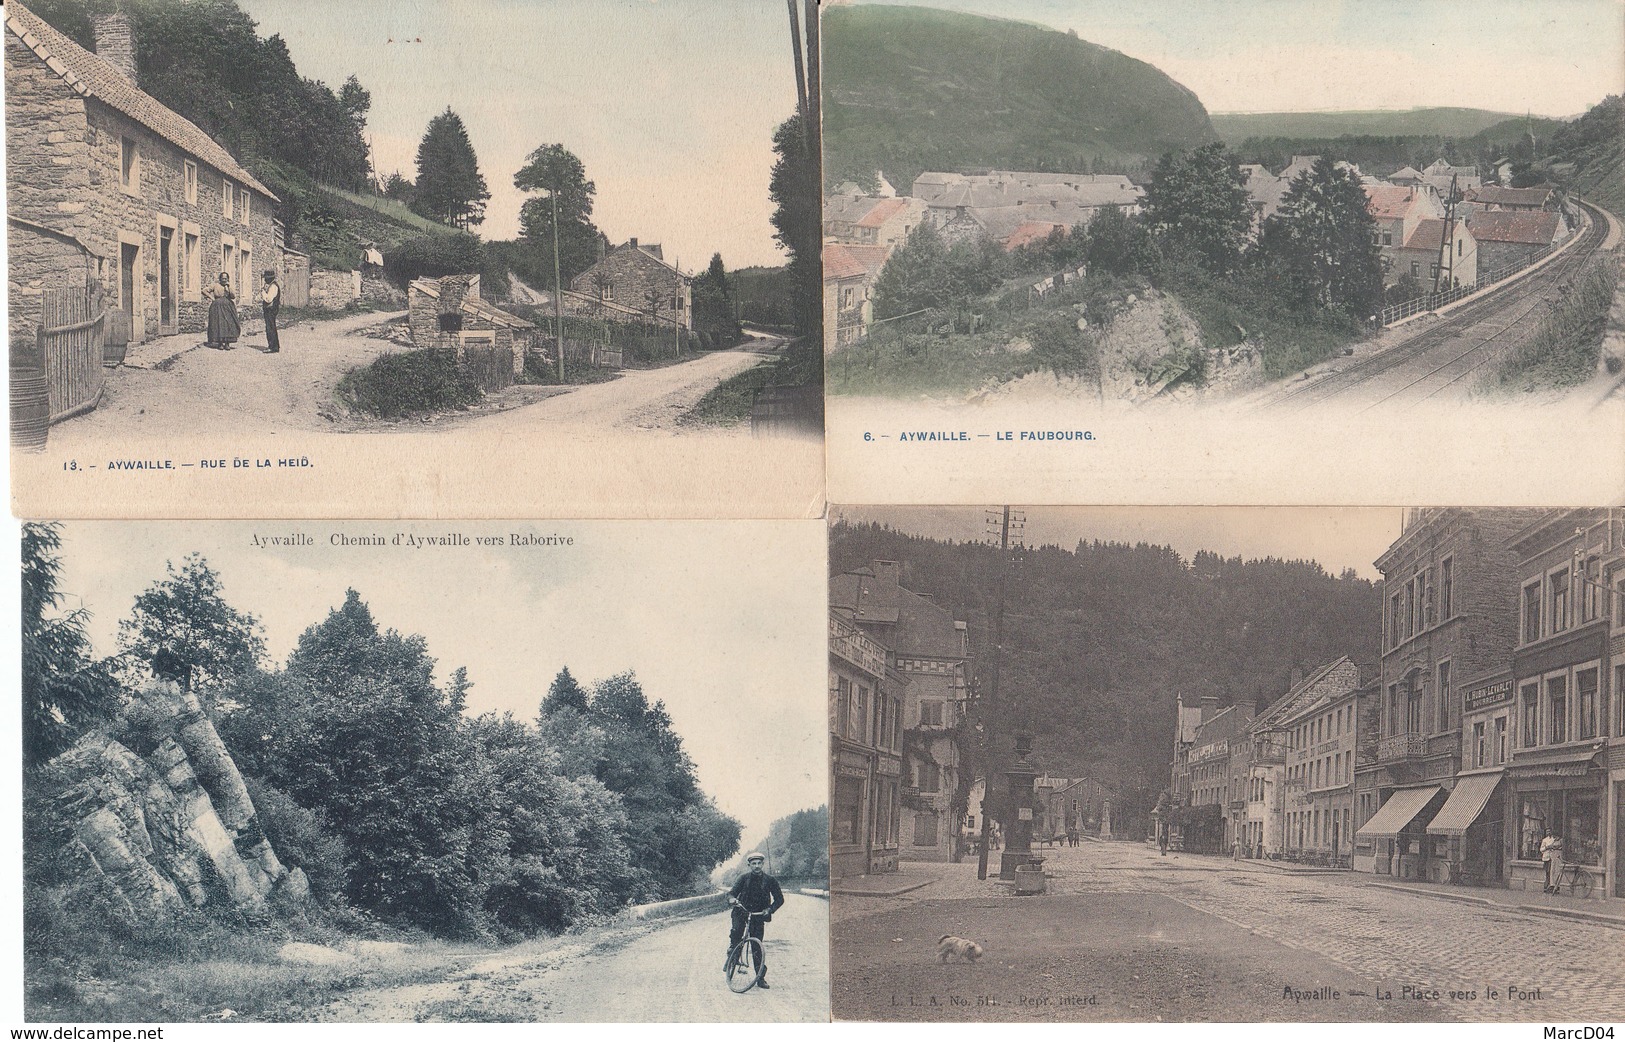 AYWAILLE: Très beau lot de 48 cartes postales anciennes